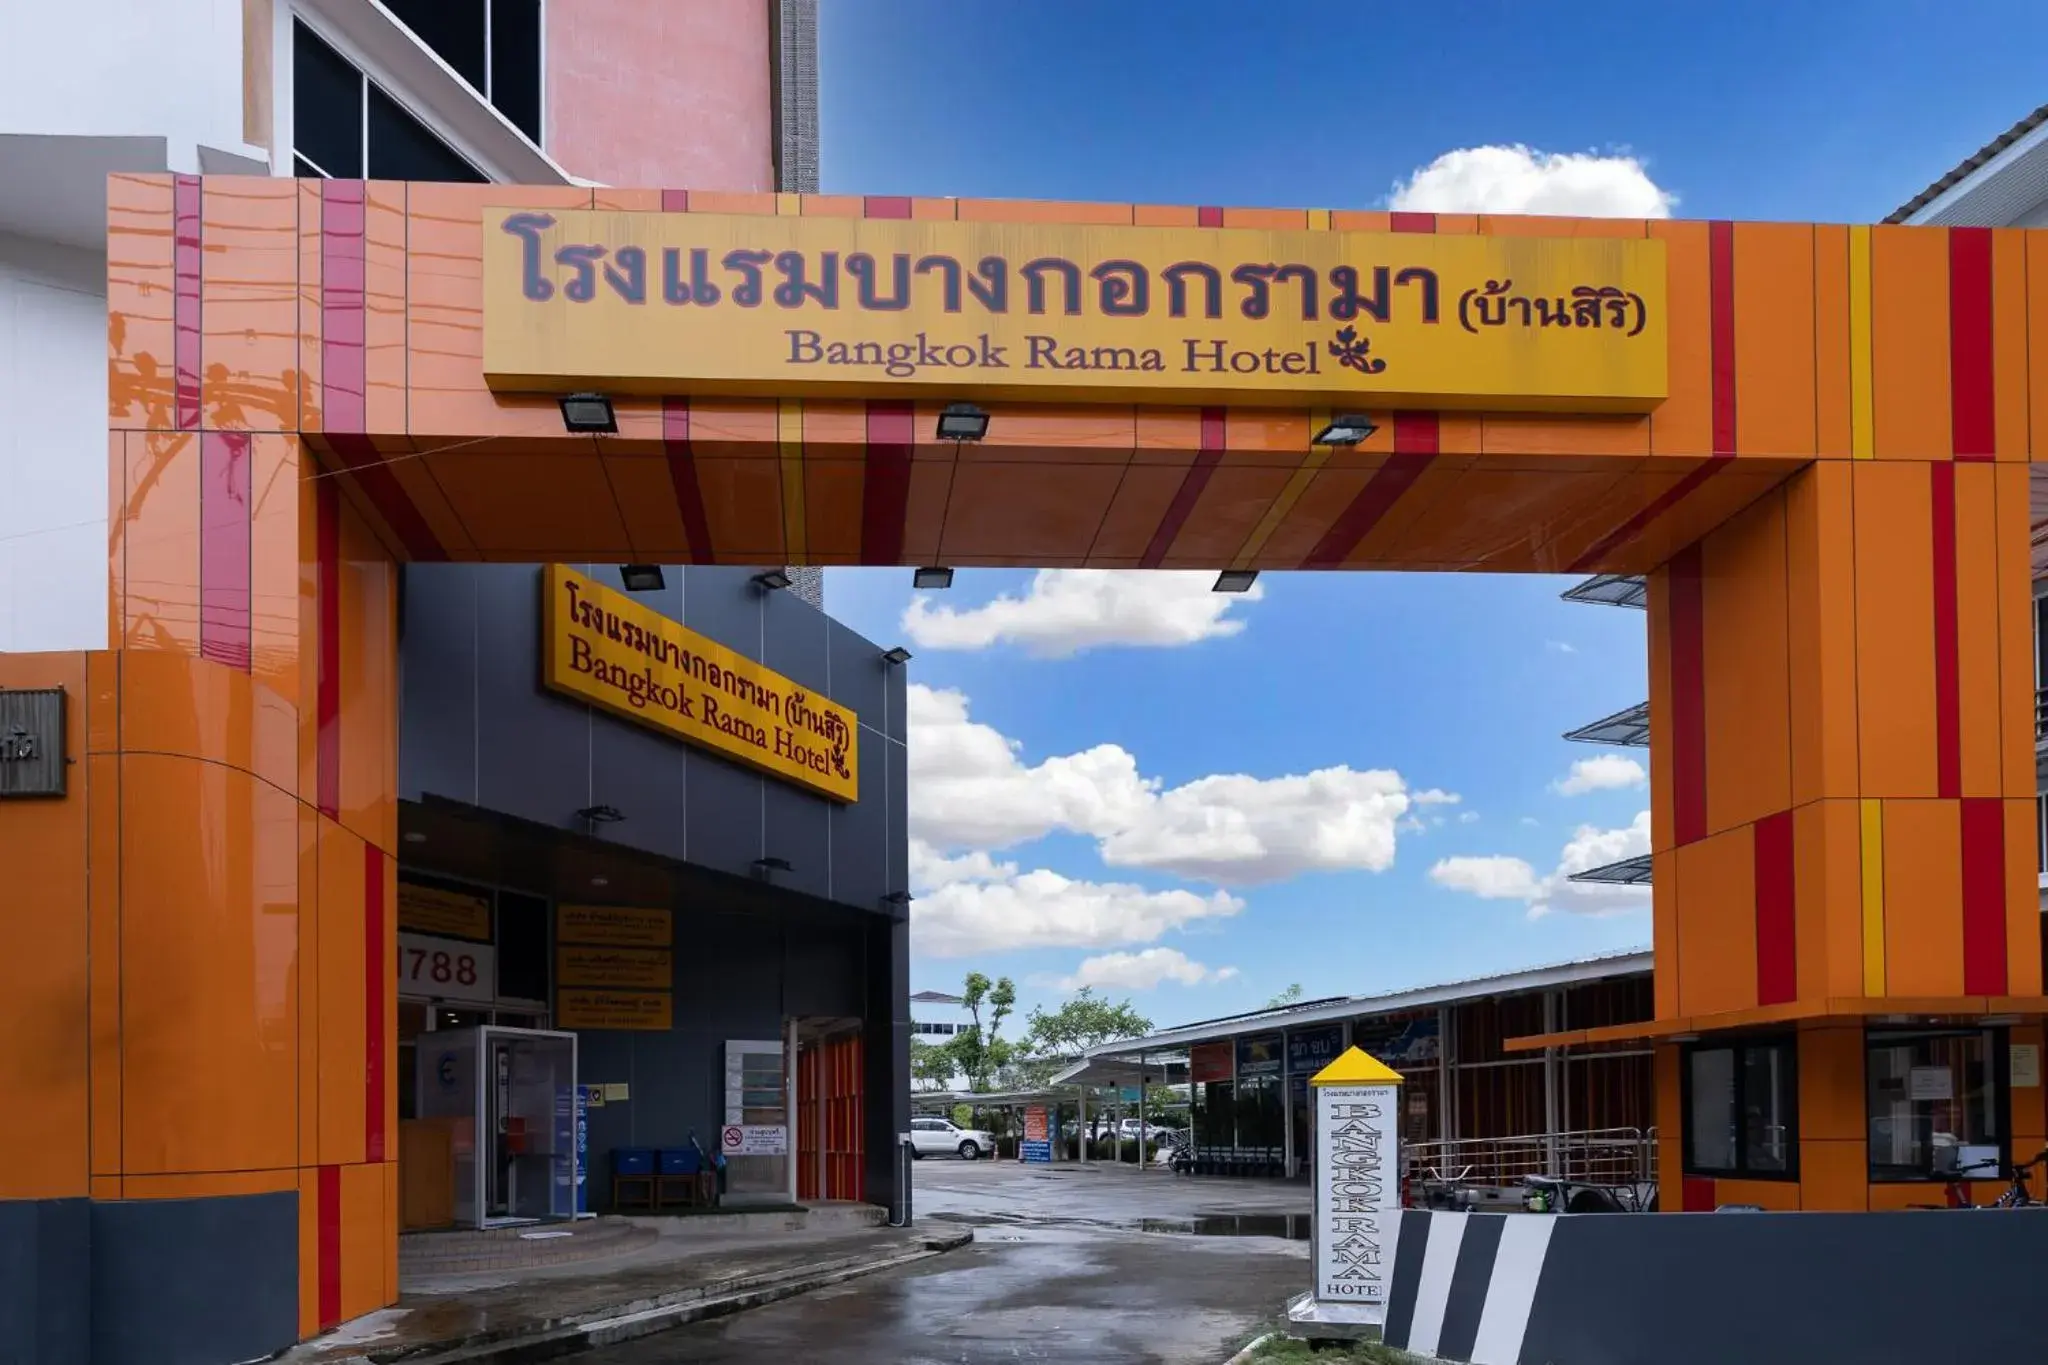 Facade/entrance in Bangkok Rama Hotel